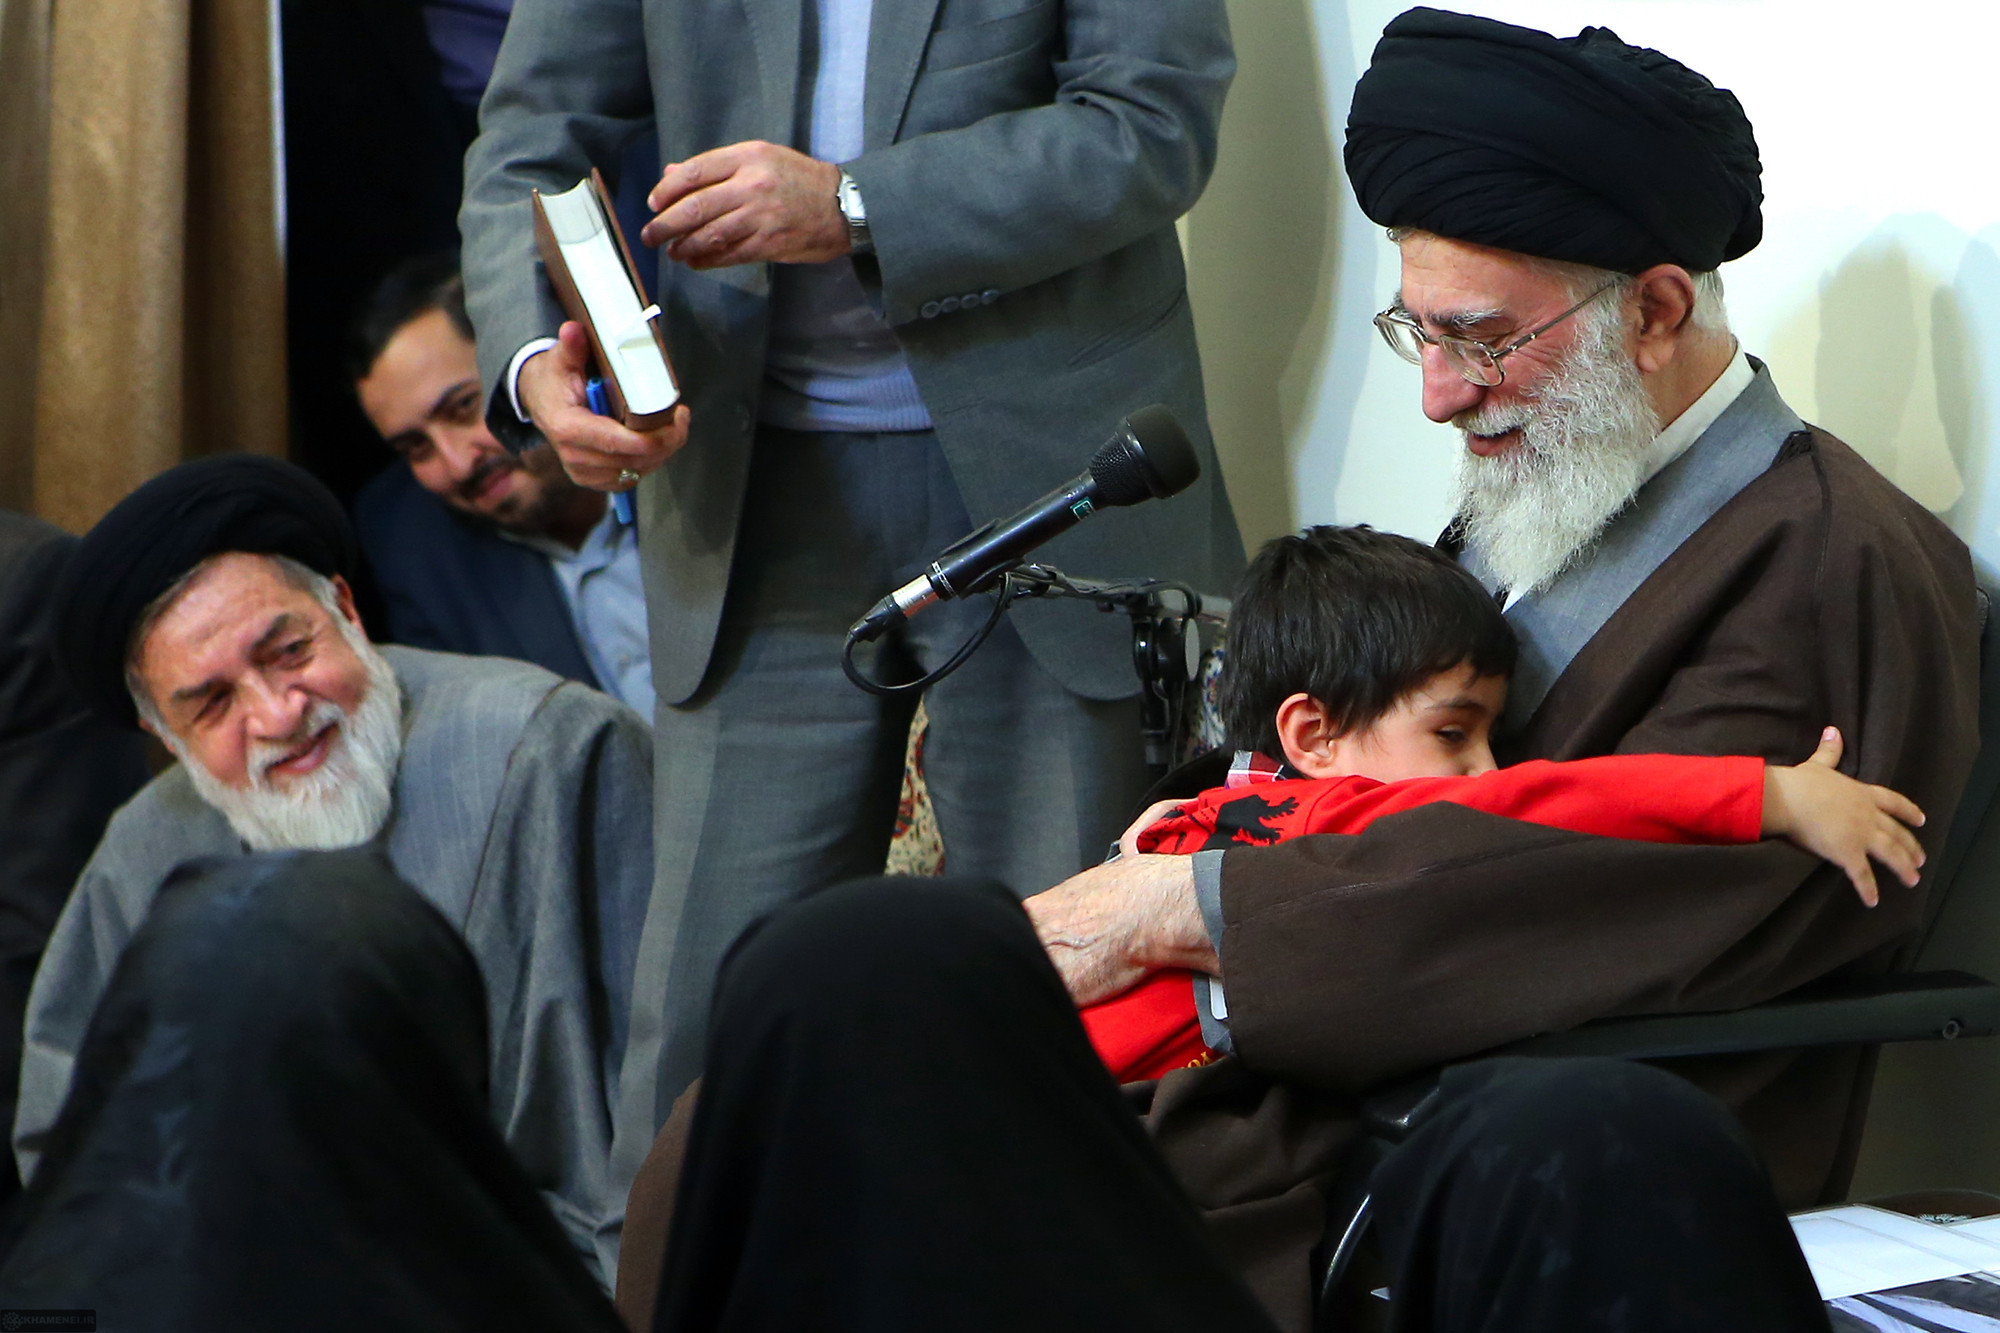 عکس رهبر ایران و خانواده